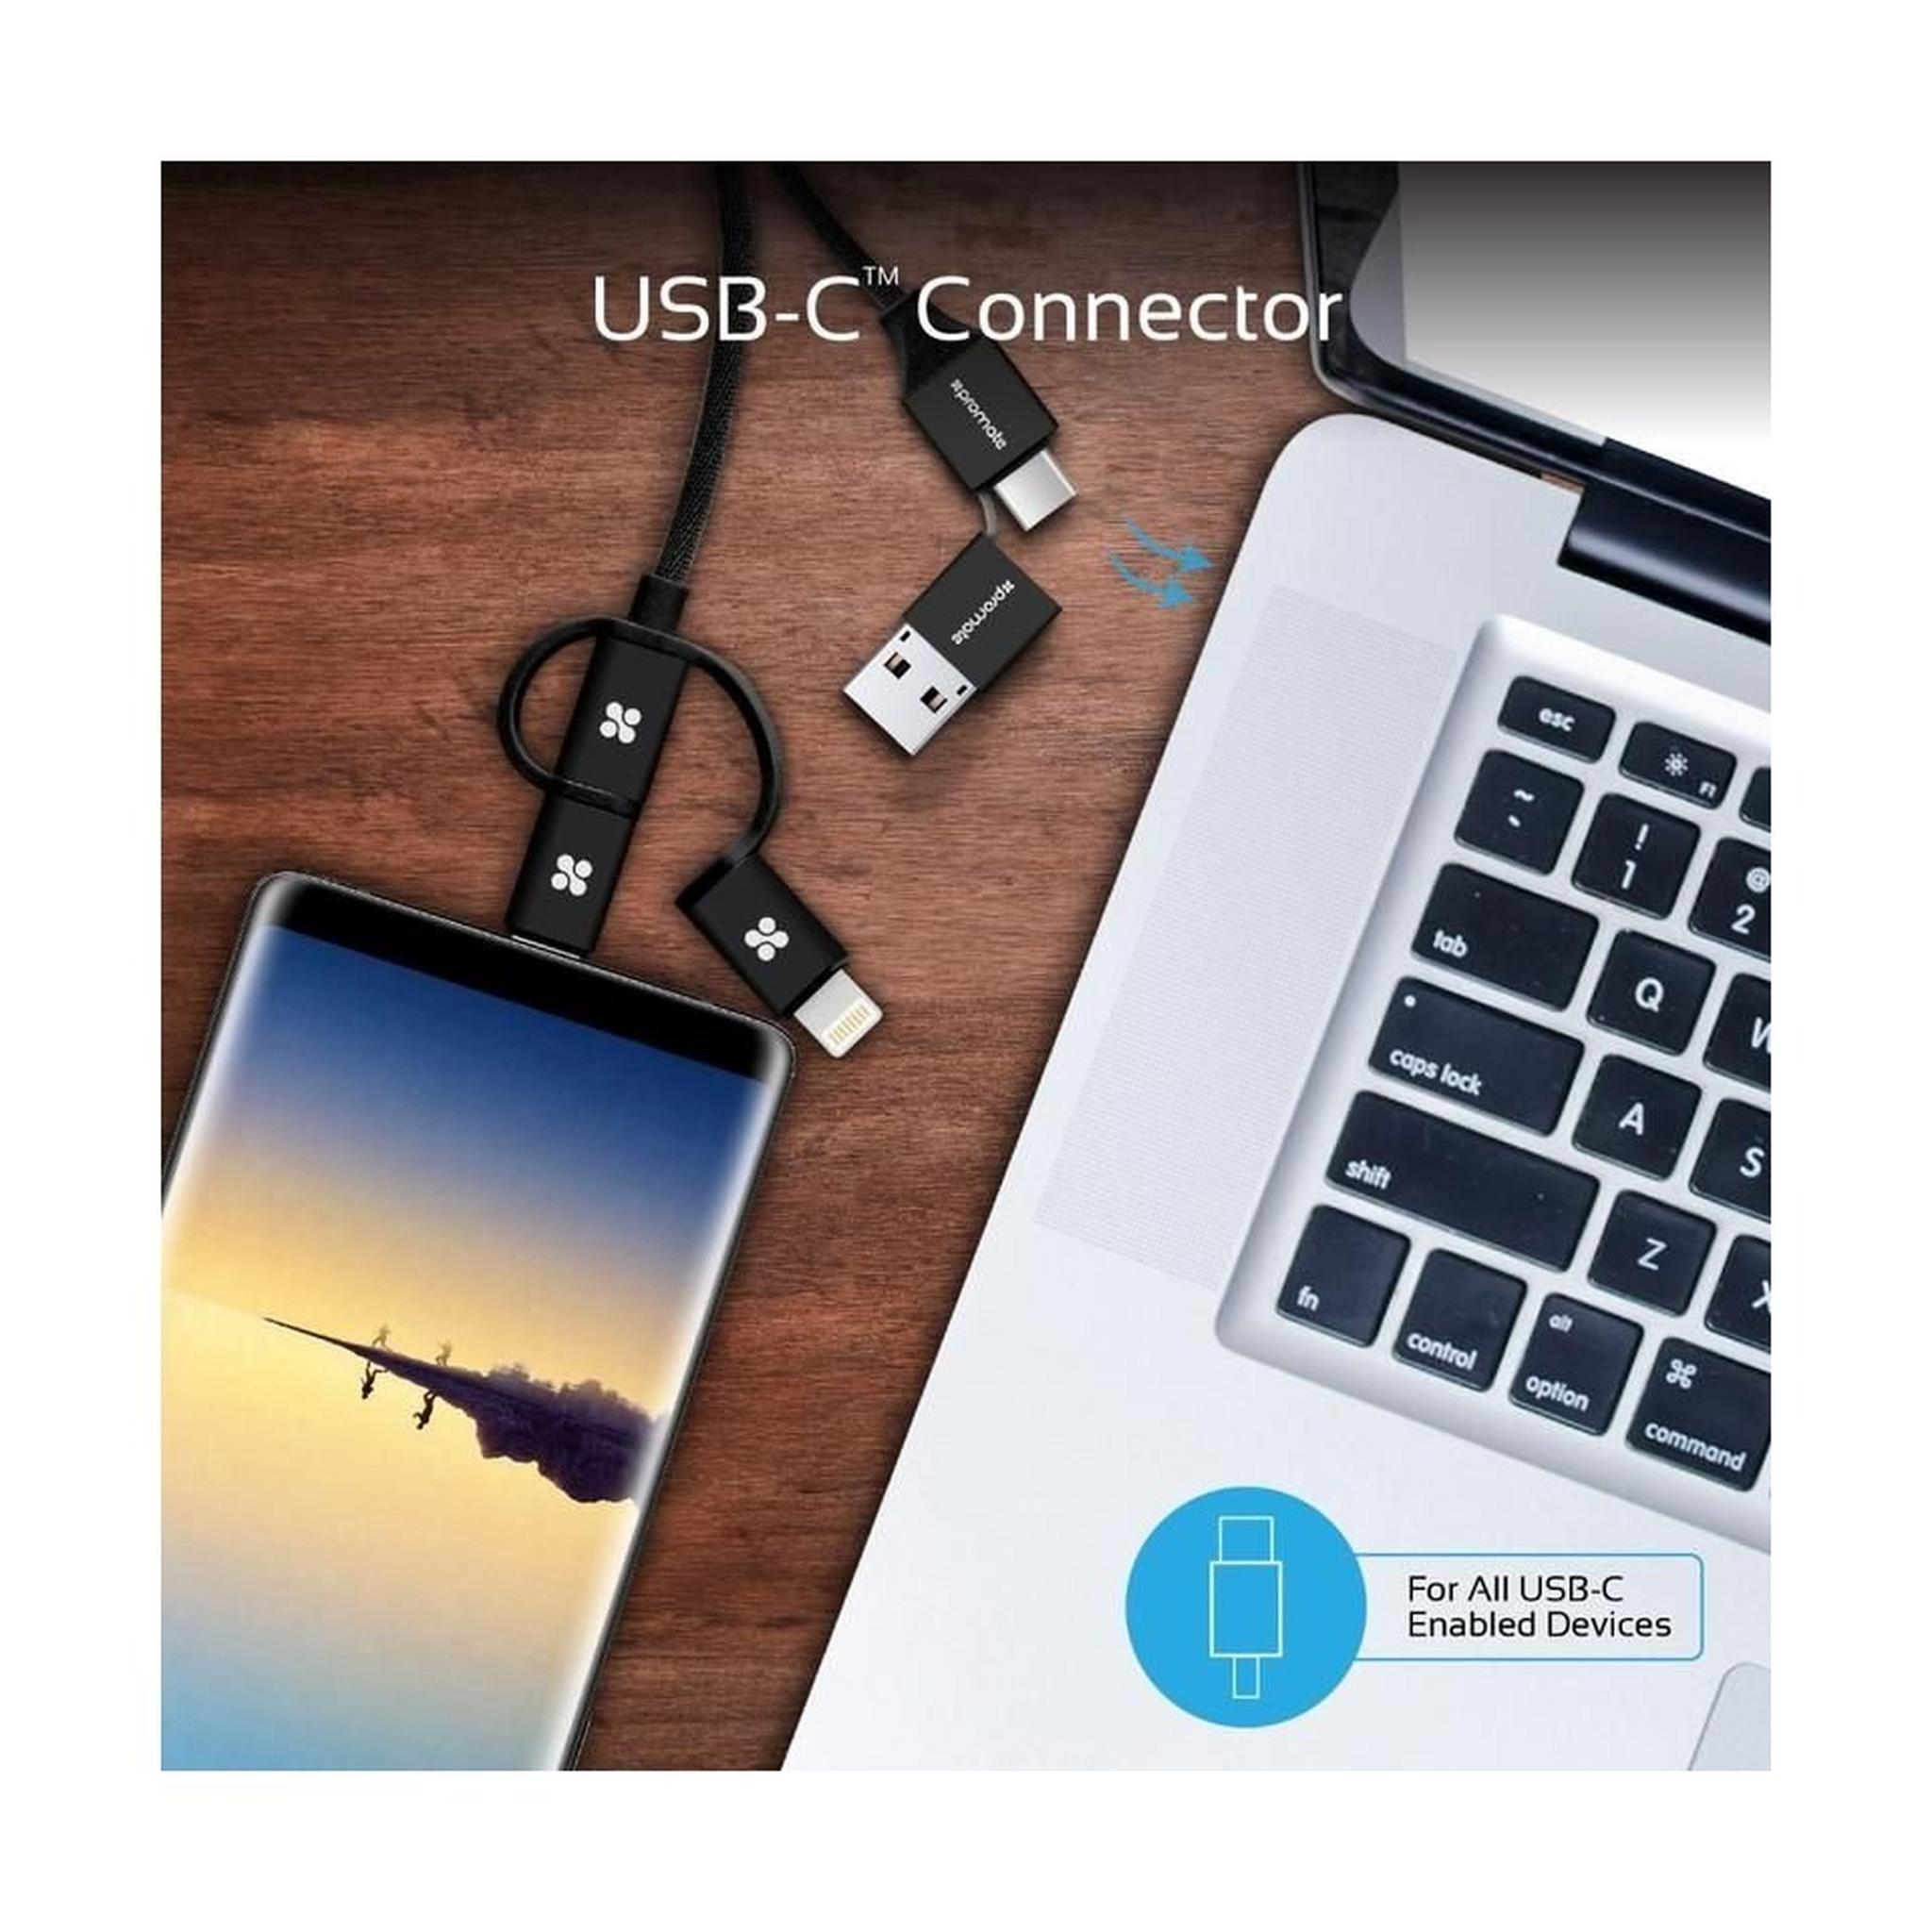 Promate UniLink-Trio2 3-in-1 Smart USB Cable - Silver